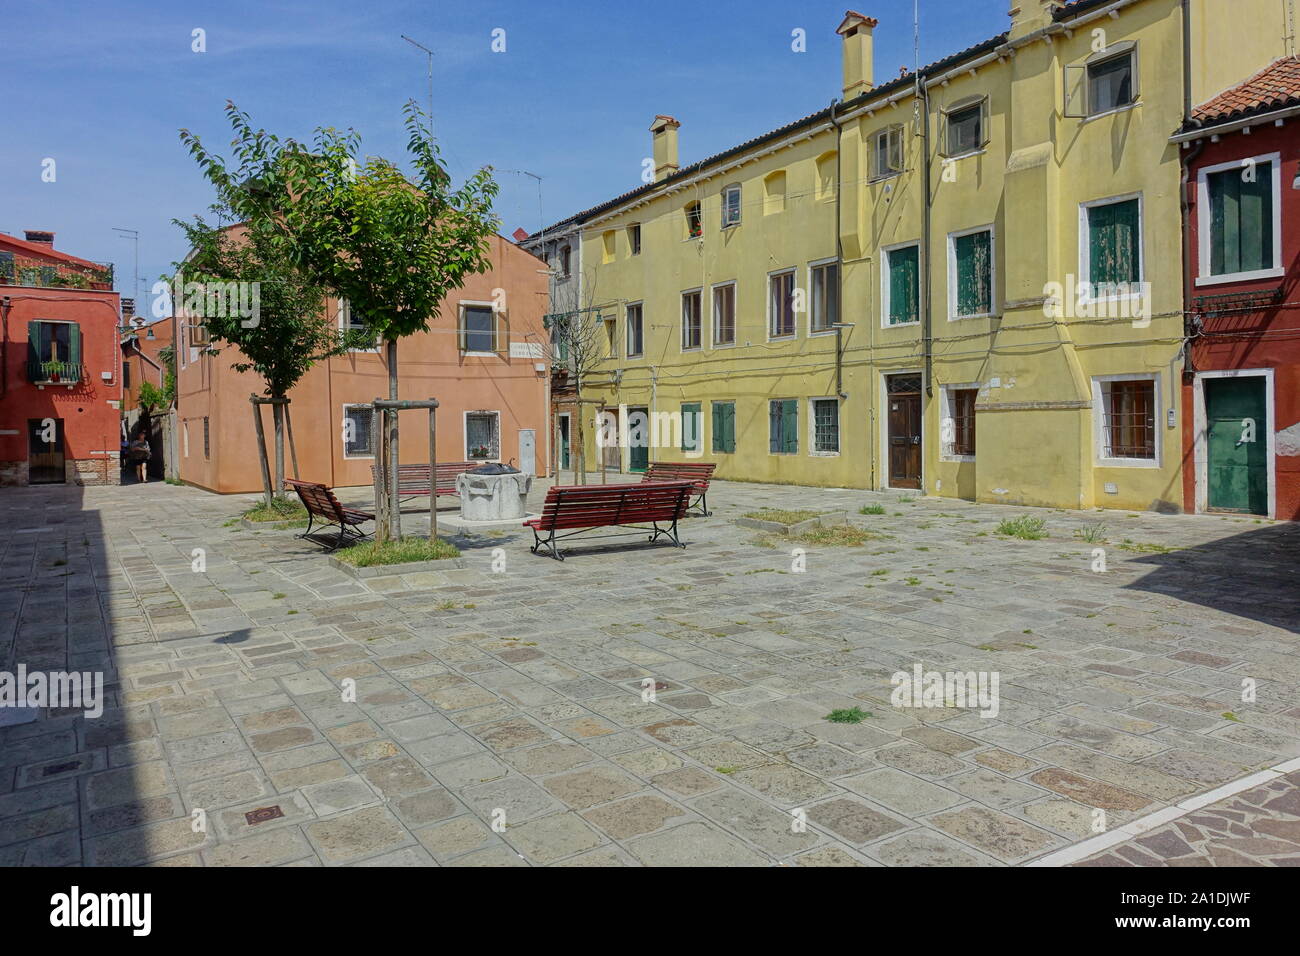 Vendig, ruhiger Platz in Giudecca - Venice, Peaceful Square at Giudecca Stock Photo